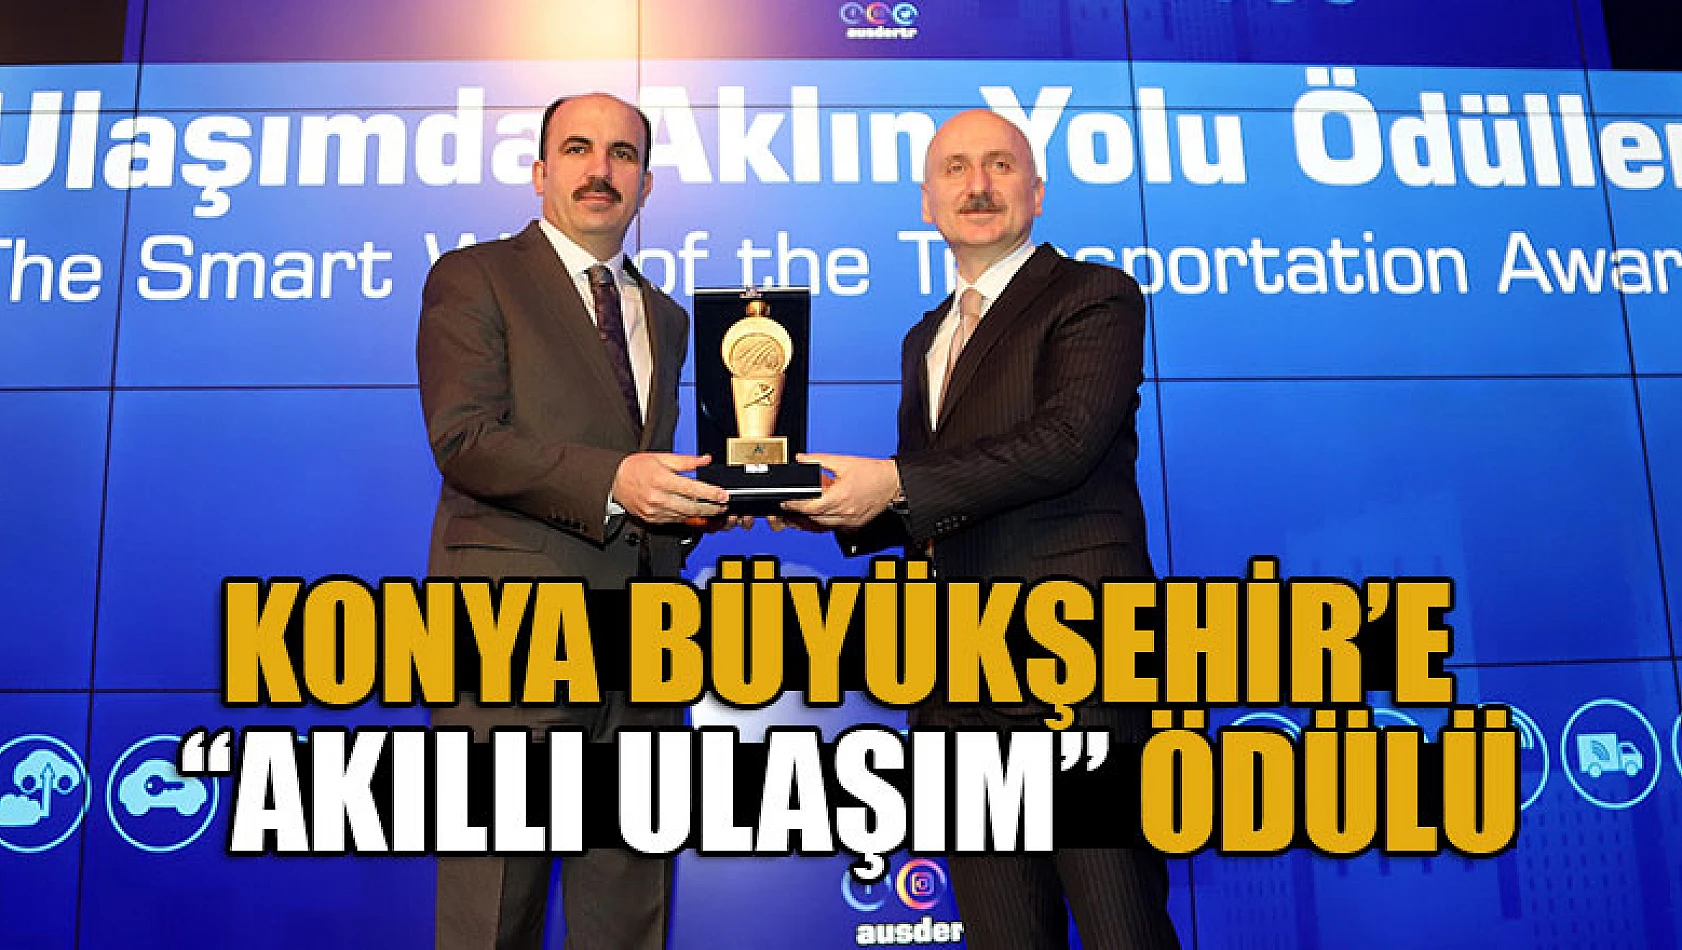 Konya Büyükşehir'e 'Akıllı Ulaşım' ödülü